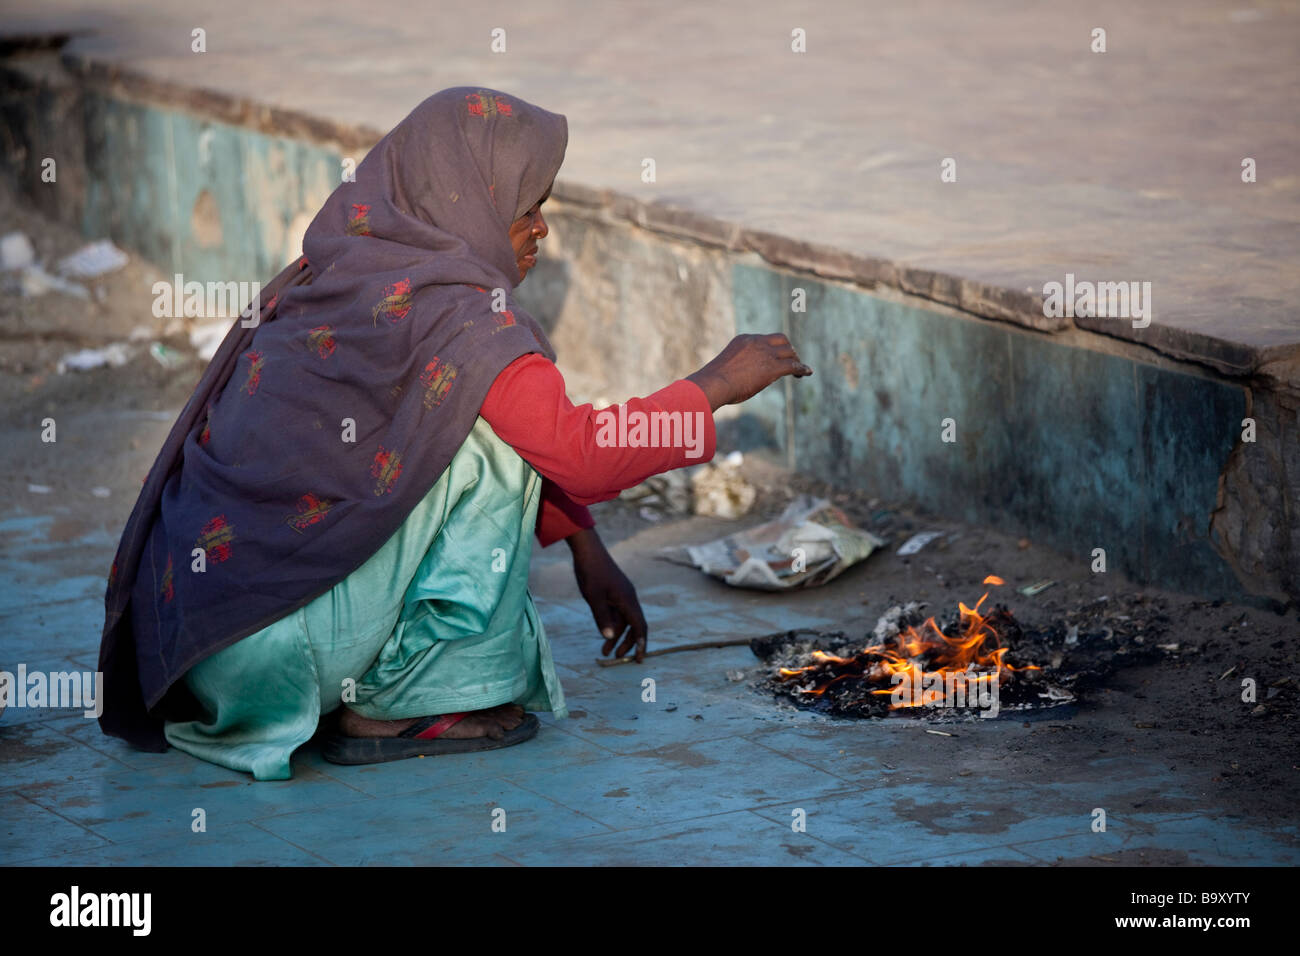 Réchauffement de la femme à côté de détritus incendie dans Delhi Inde Banque D'Images